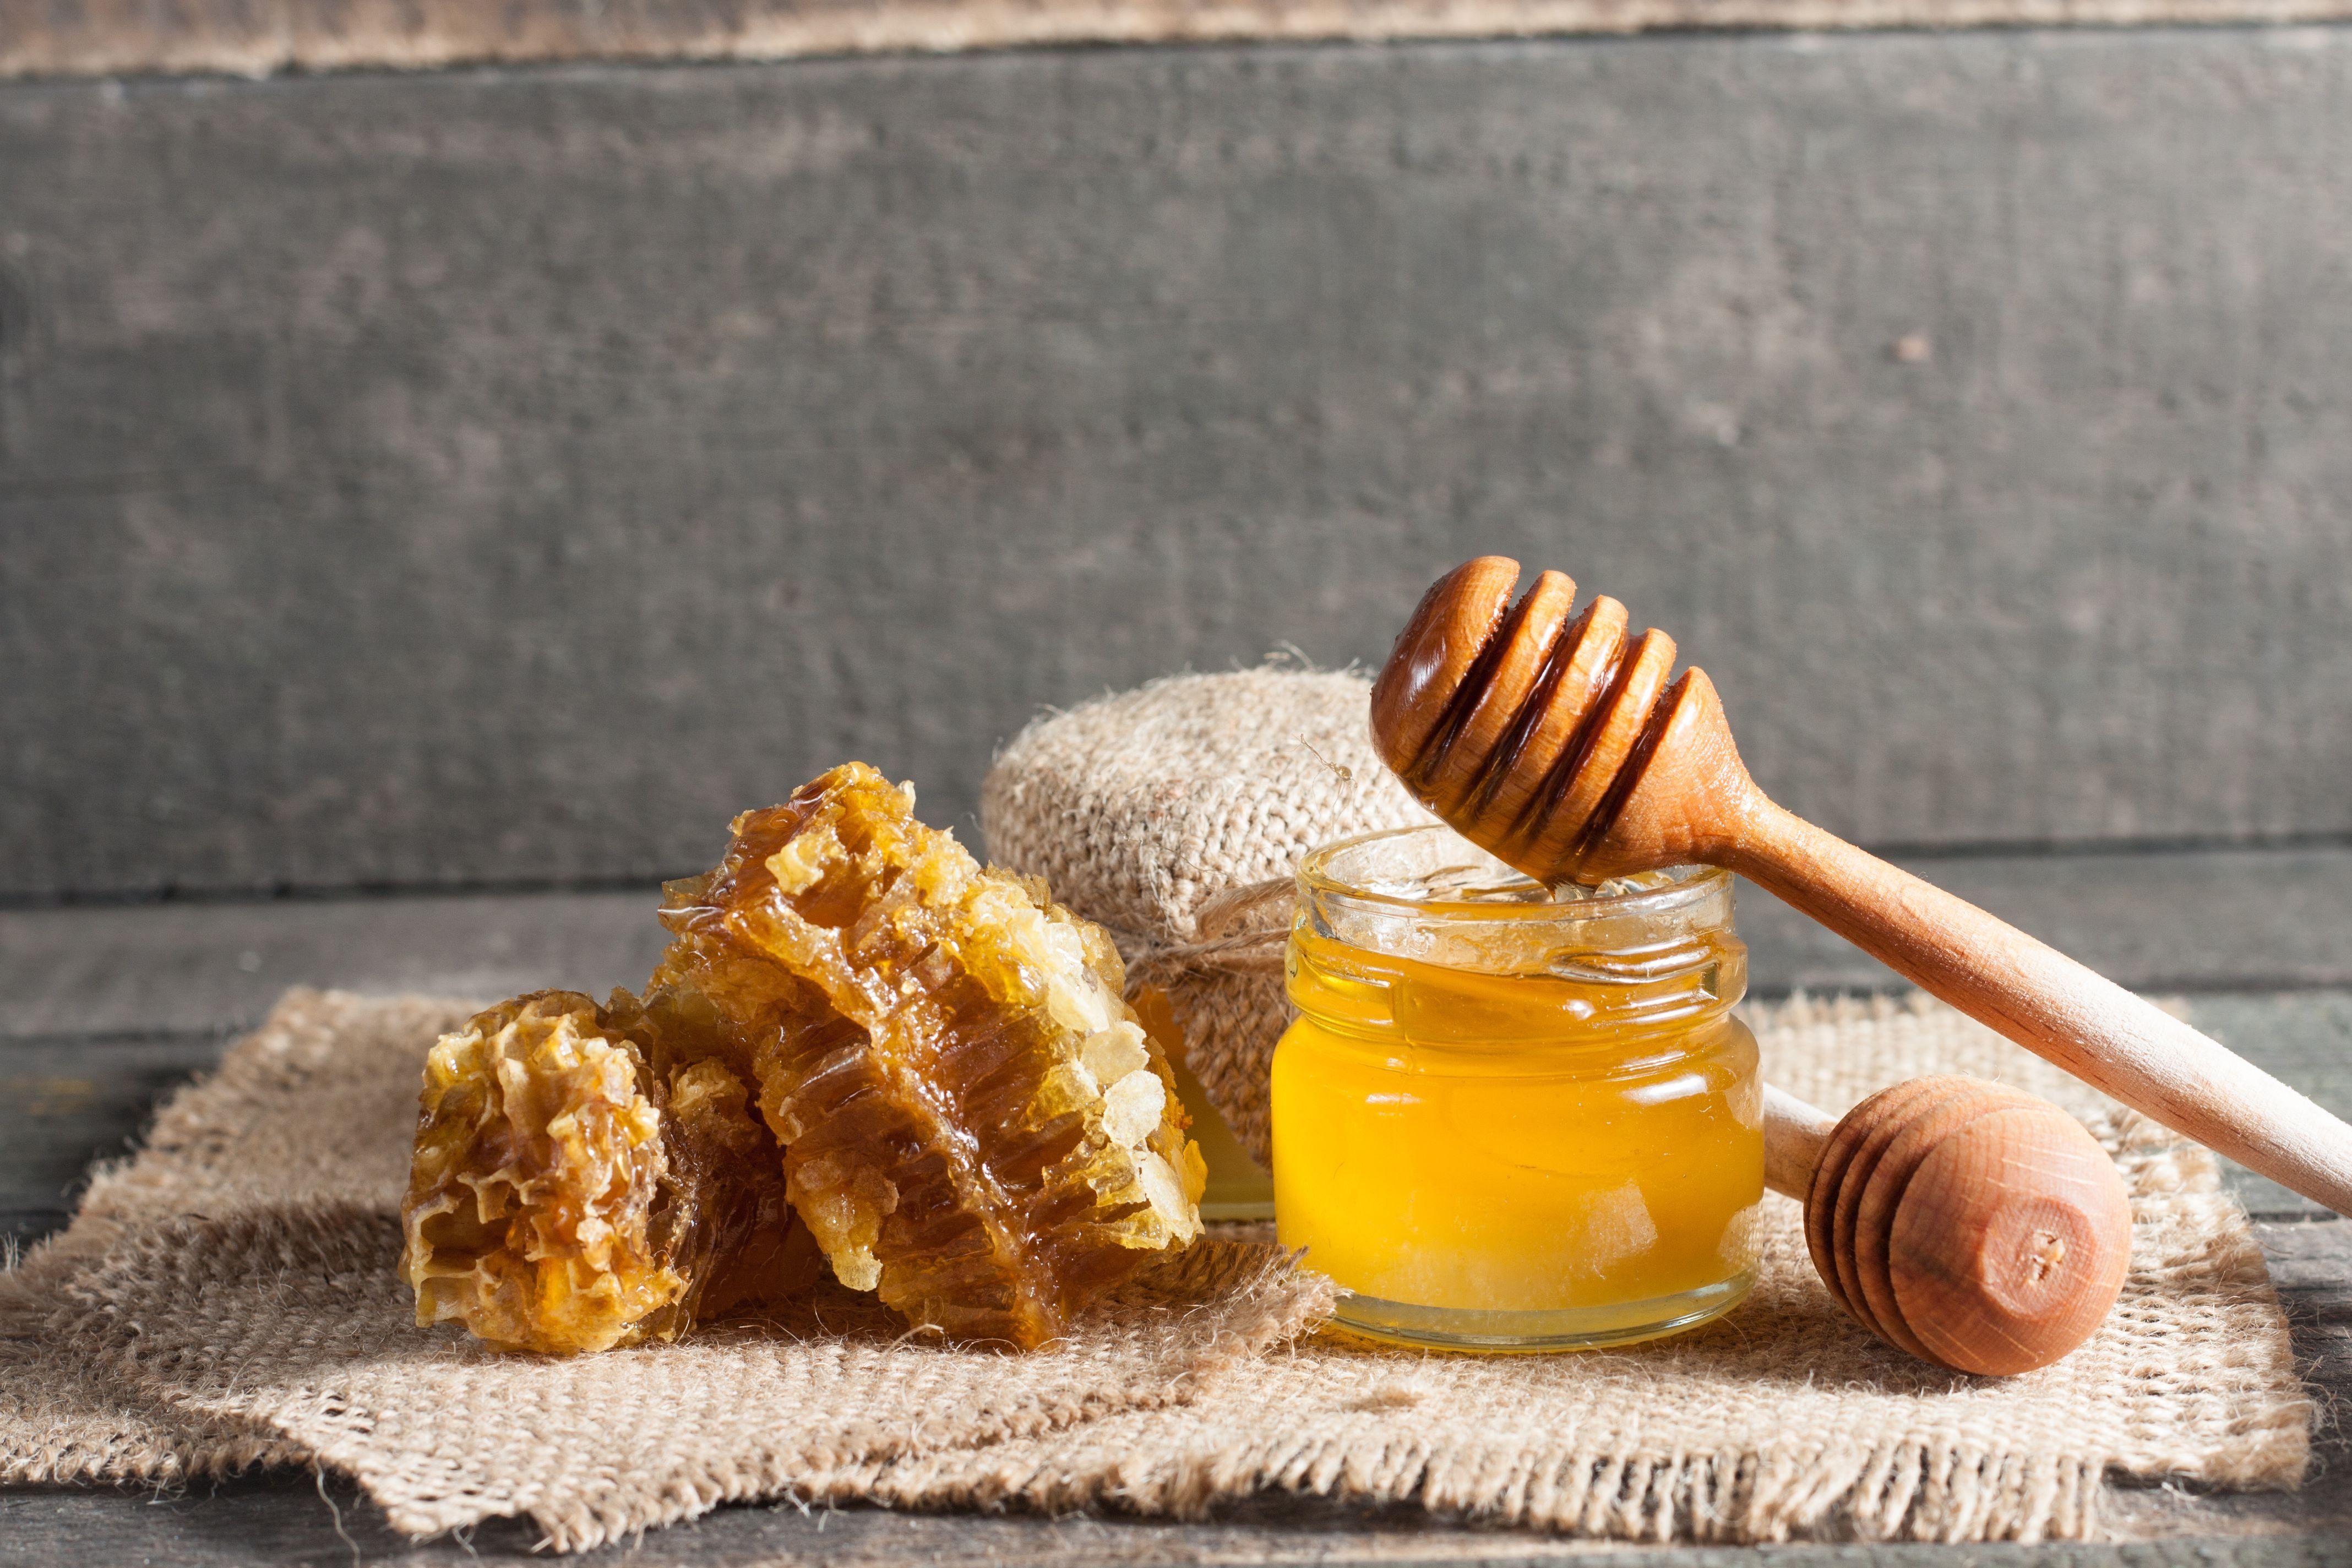 Újra behozhatják Magyarországra az ukrán mézet